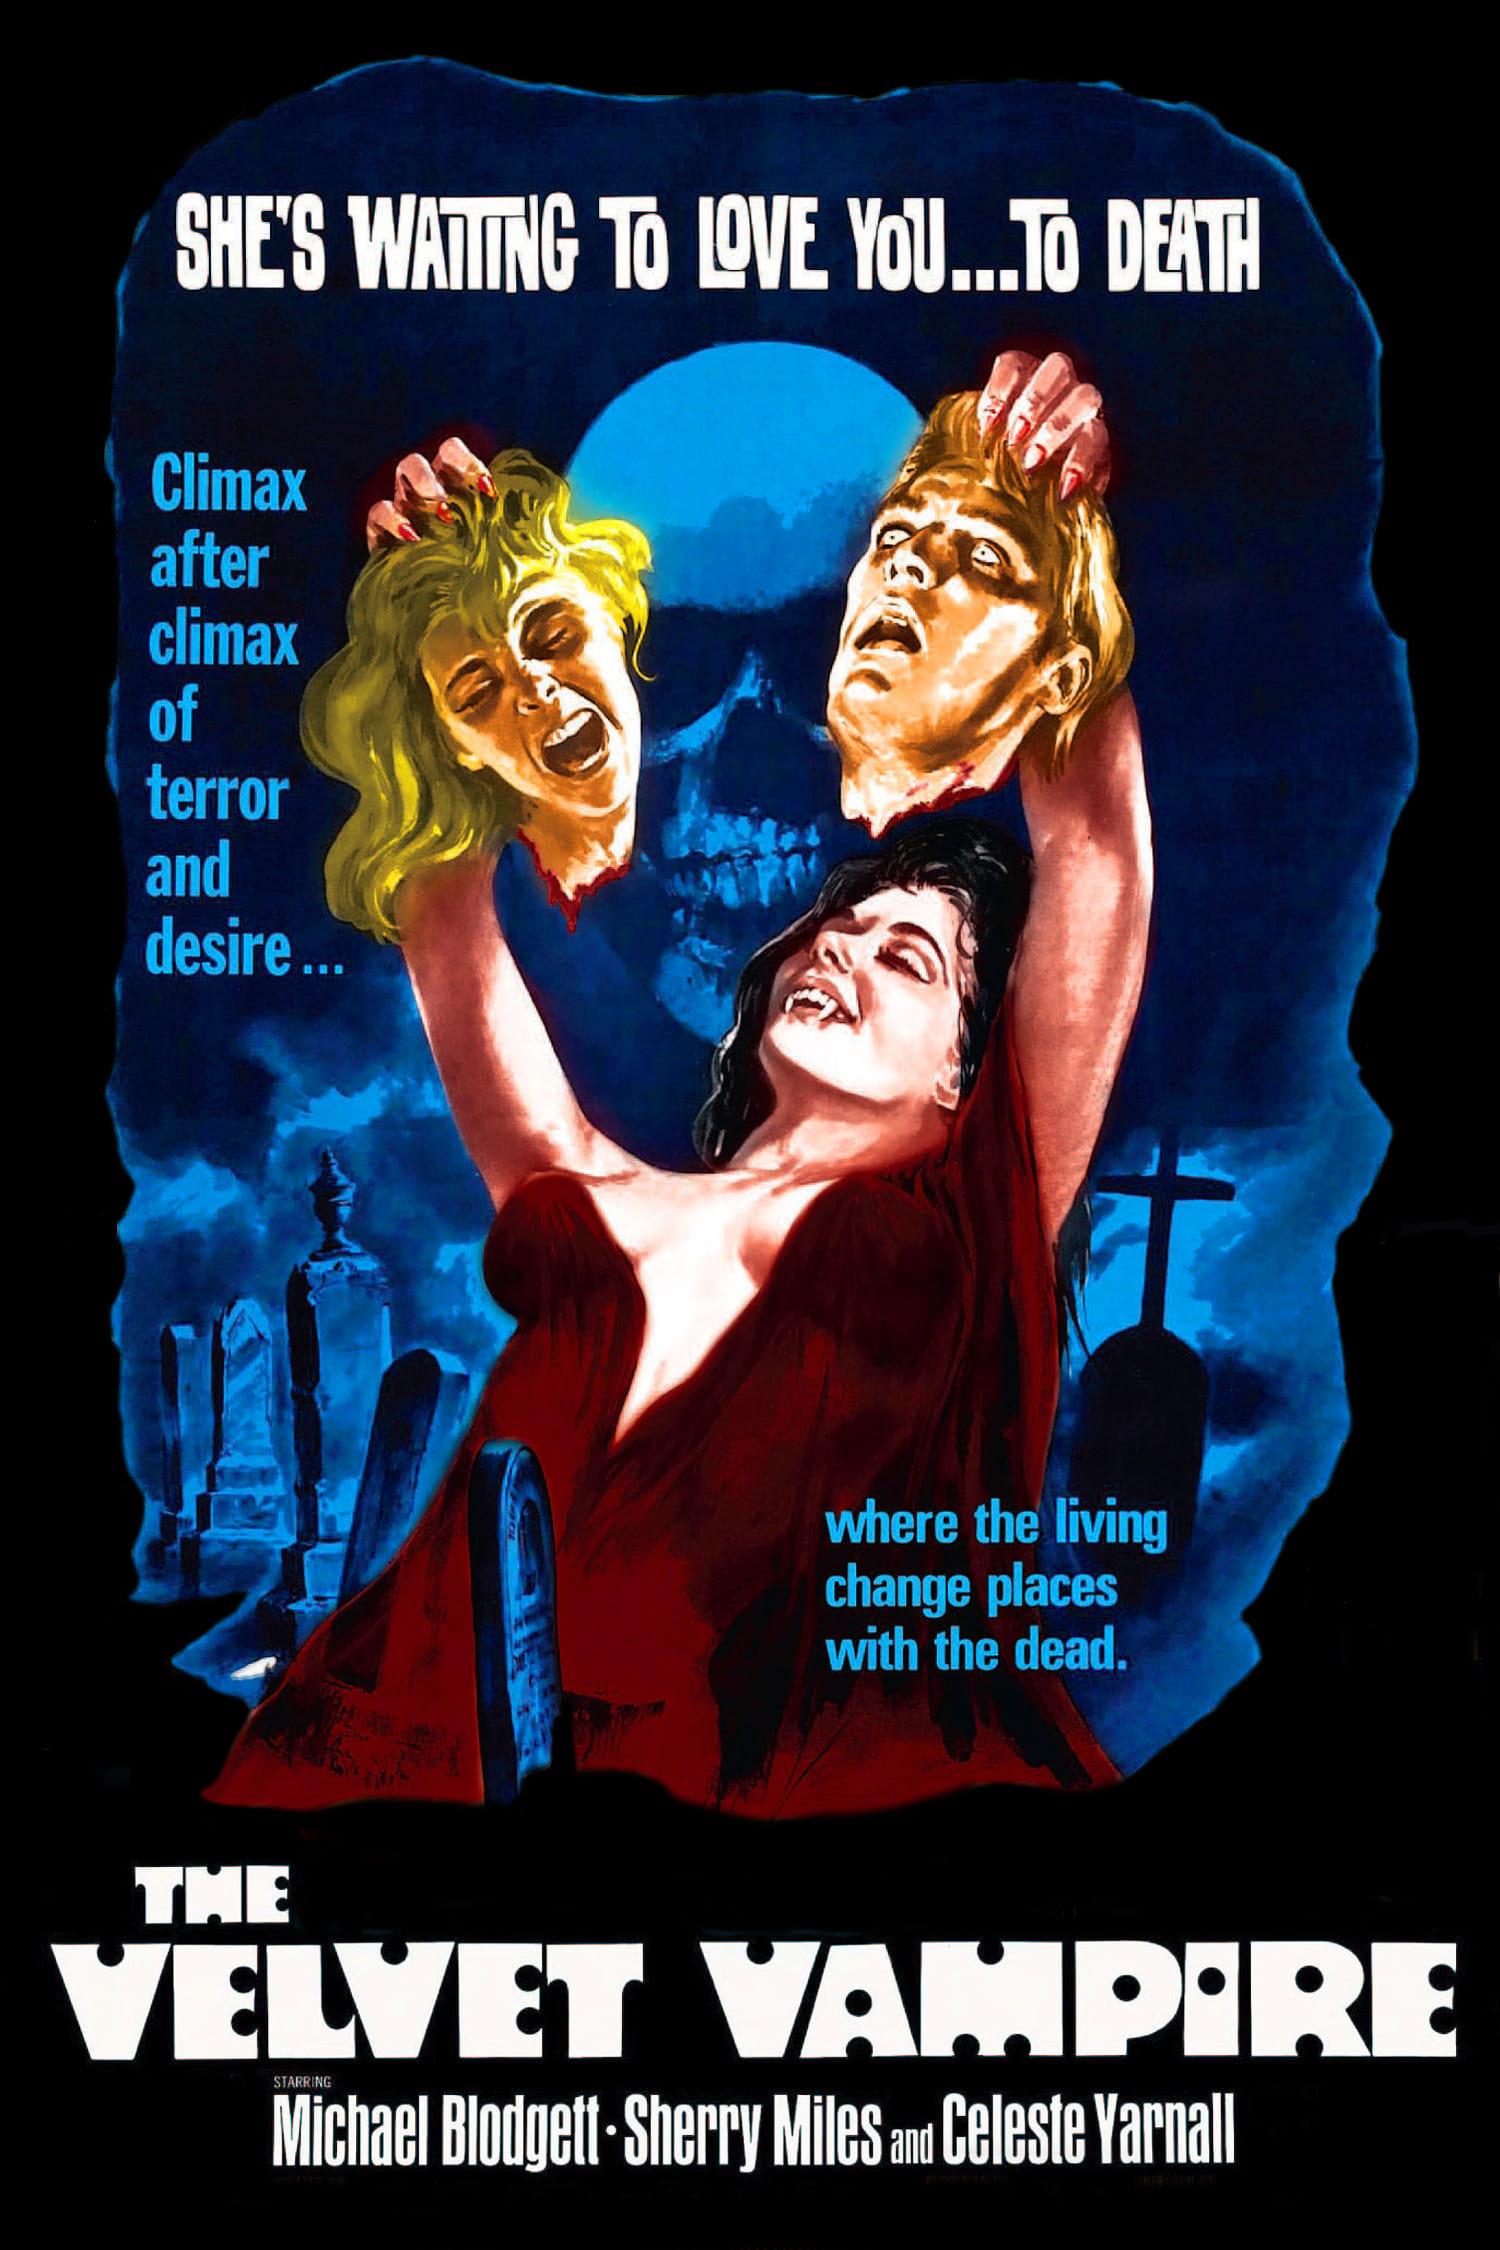 The Velvet Vampire poster